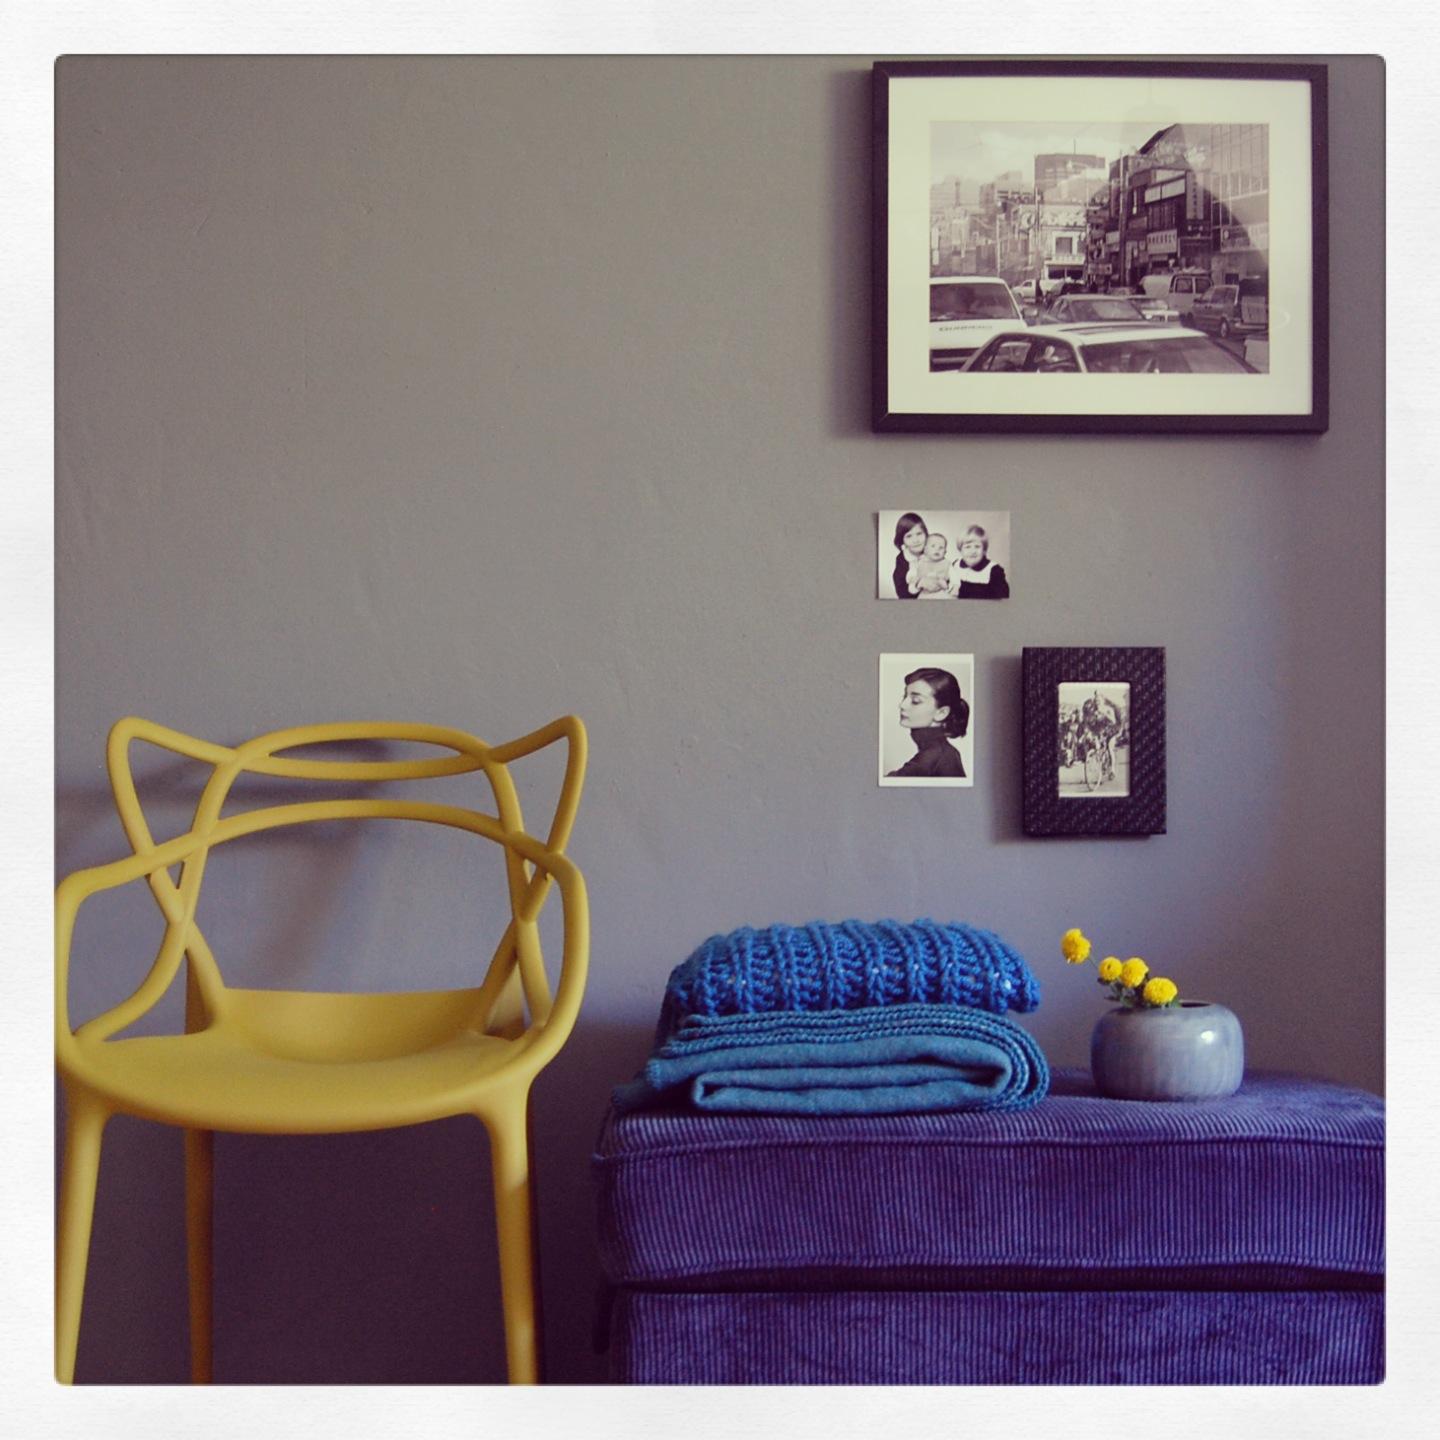 Wohnen mit Farbe #stuhl #wandfarbe #wandgestaltung #leseecke #grauewandfarbe ©stadt.bude